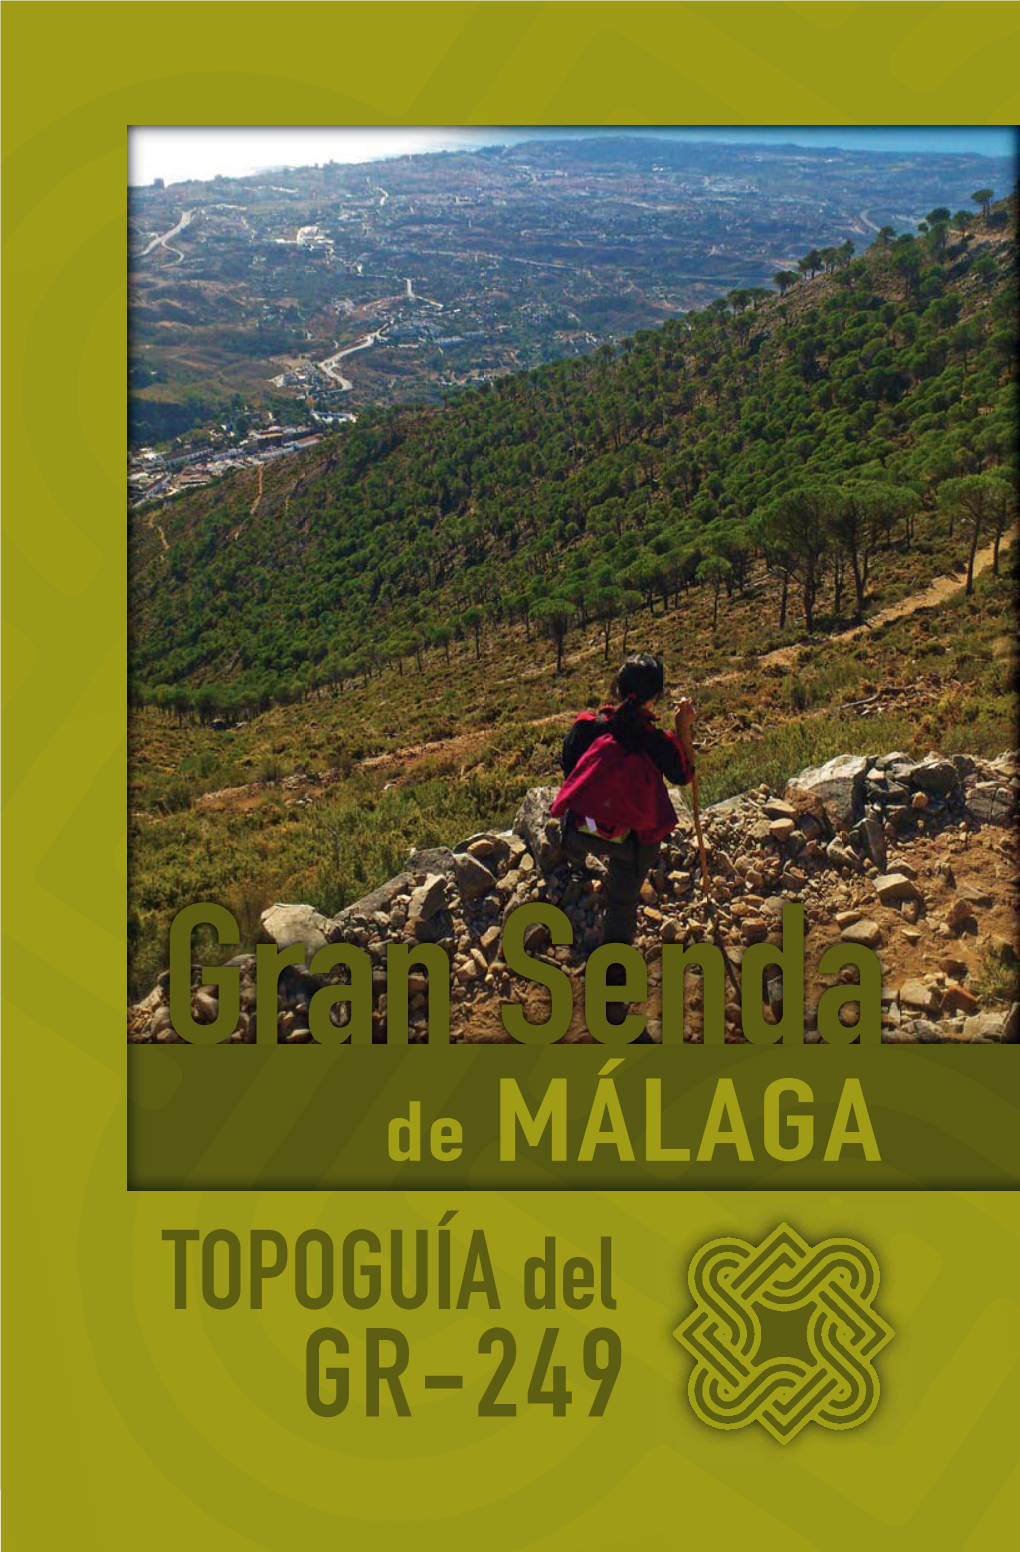 Descarga La Topoguía Del GR 249 De La Gran Senda De Málaga